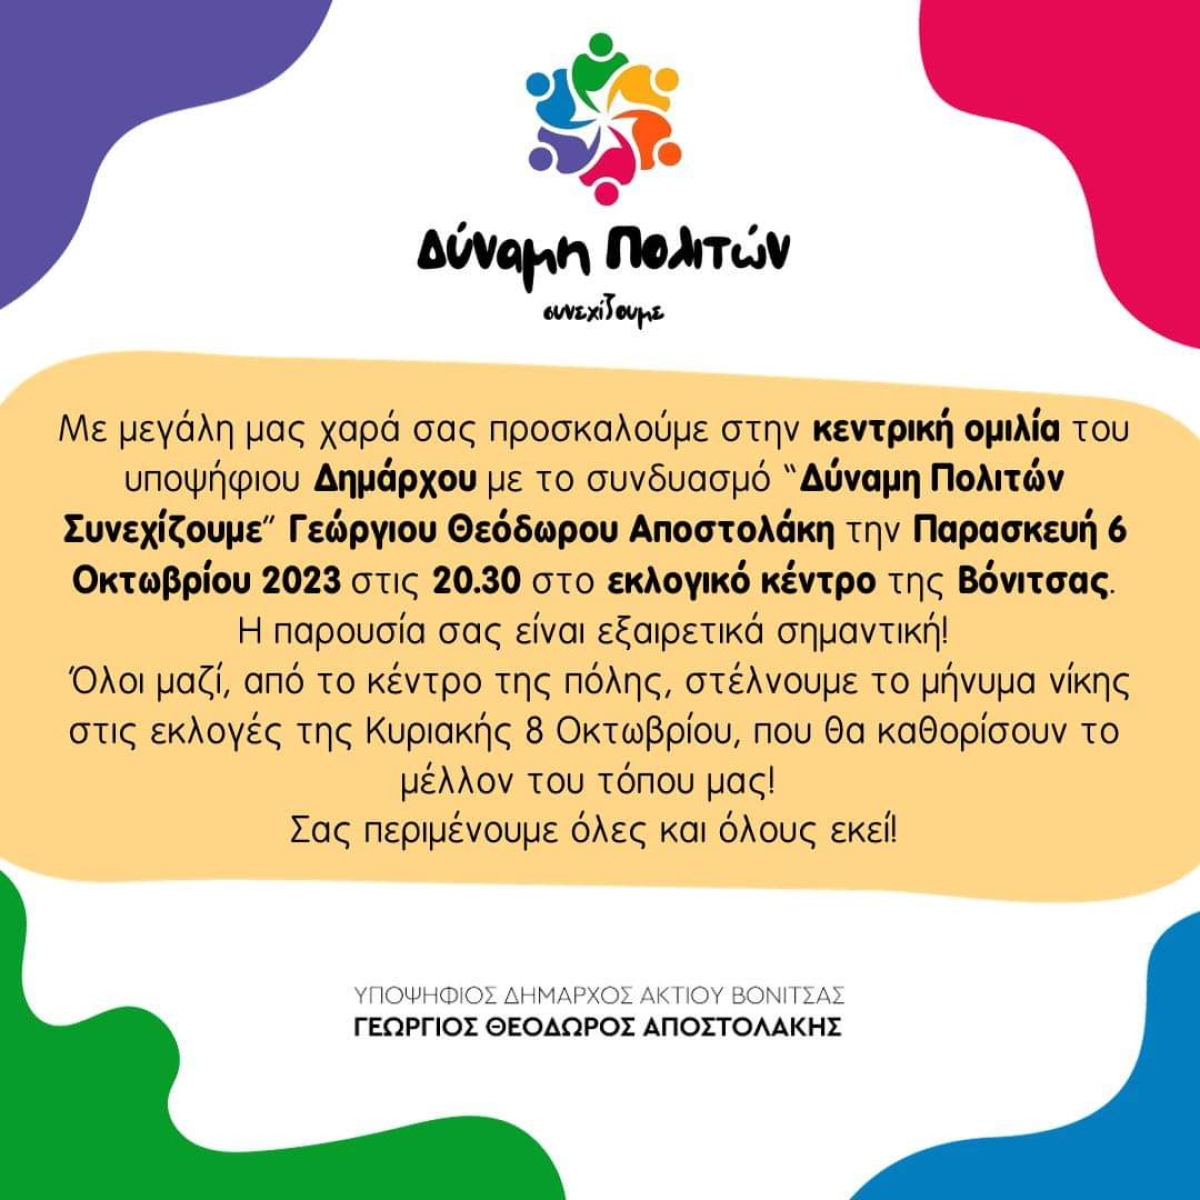 Πρόσκληση για την κεντρική προεκλογική συγκεντρωση του Γιώργου Αποστολάκη στη Βόνιτσα (Παρ 6/10/2023 20:30)